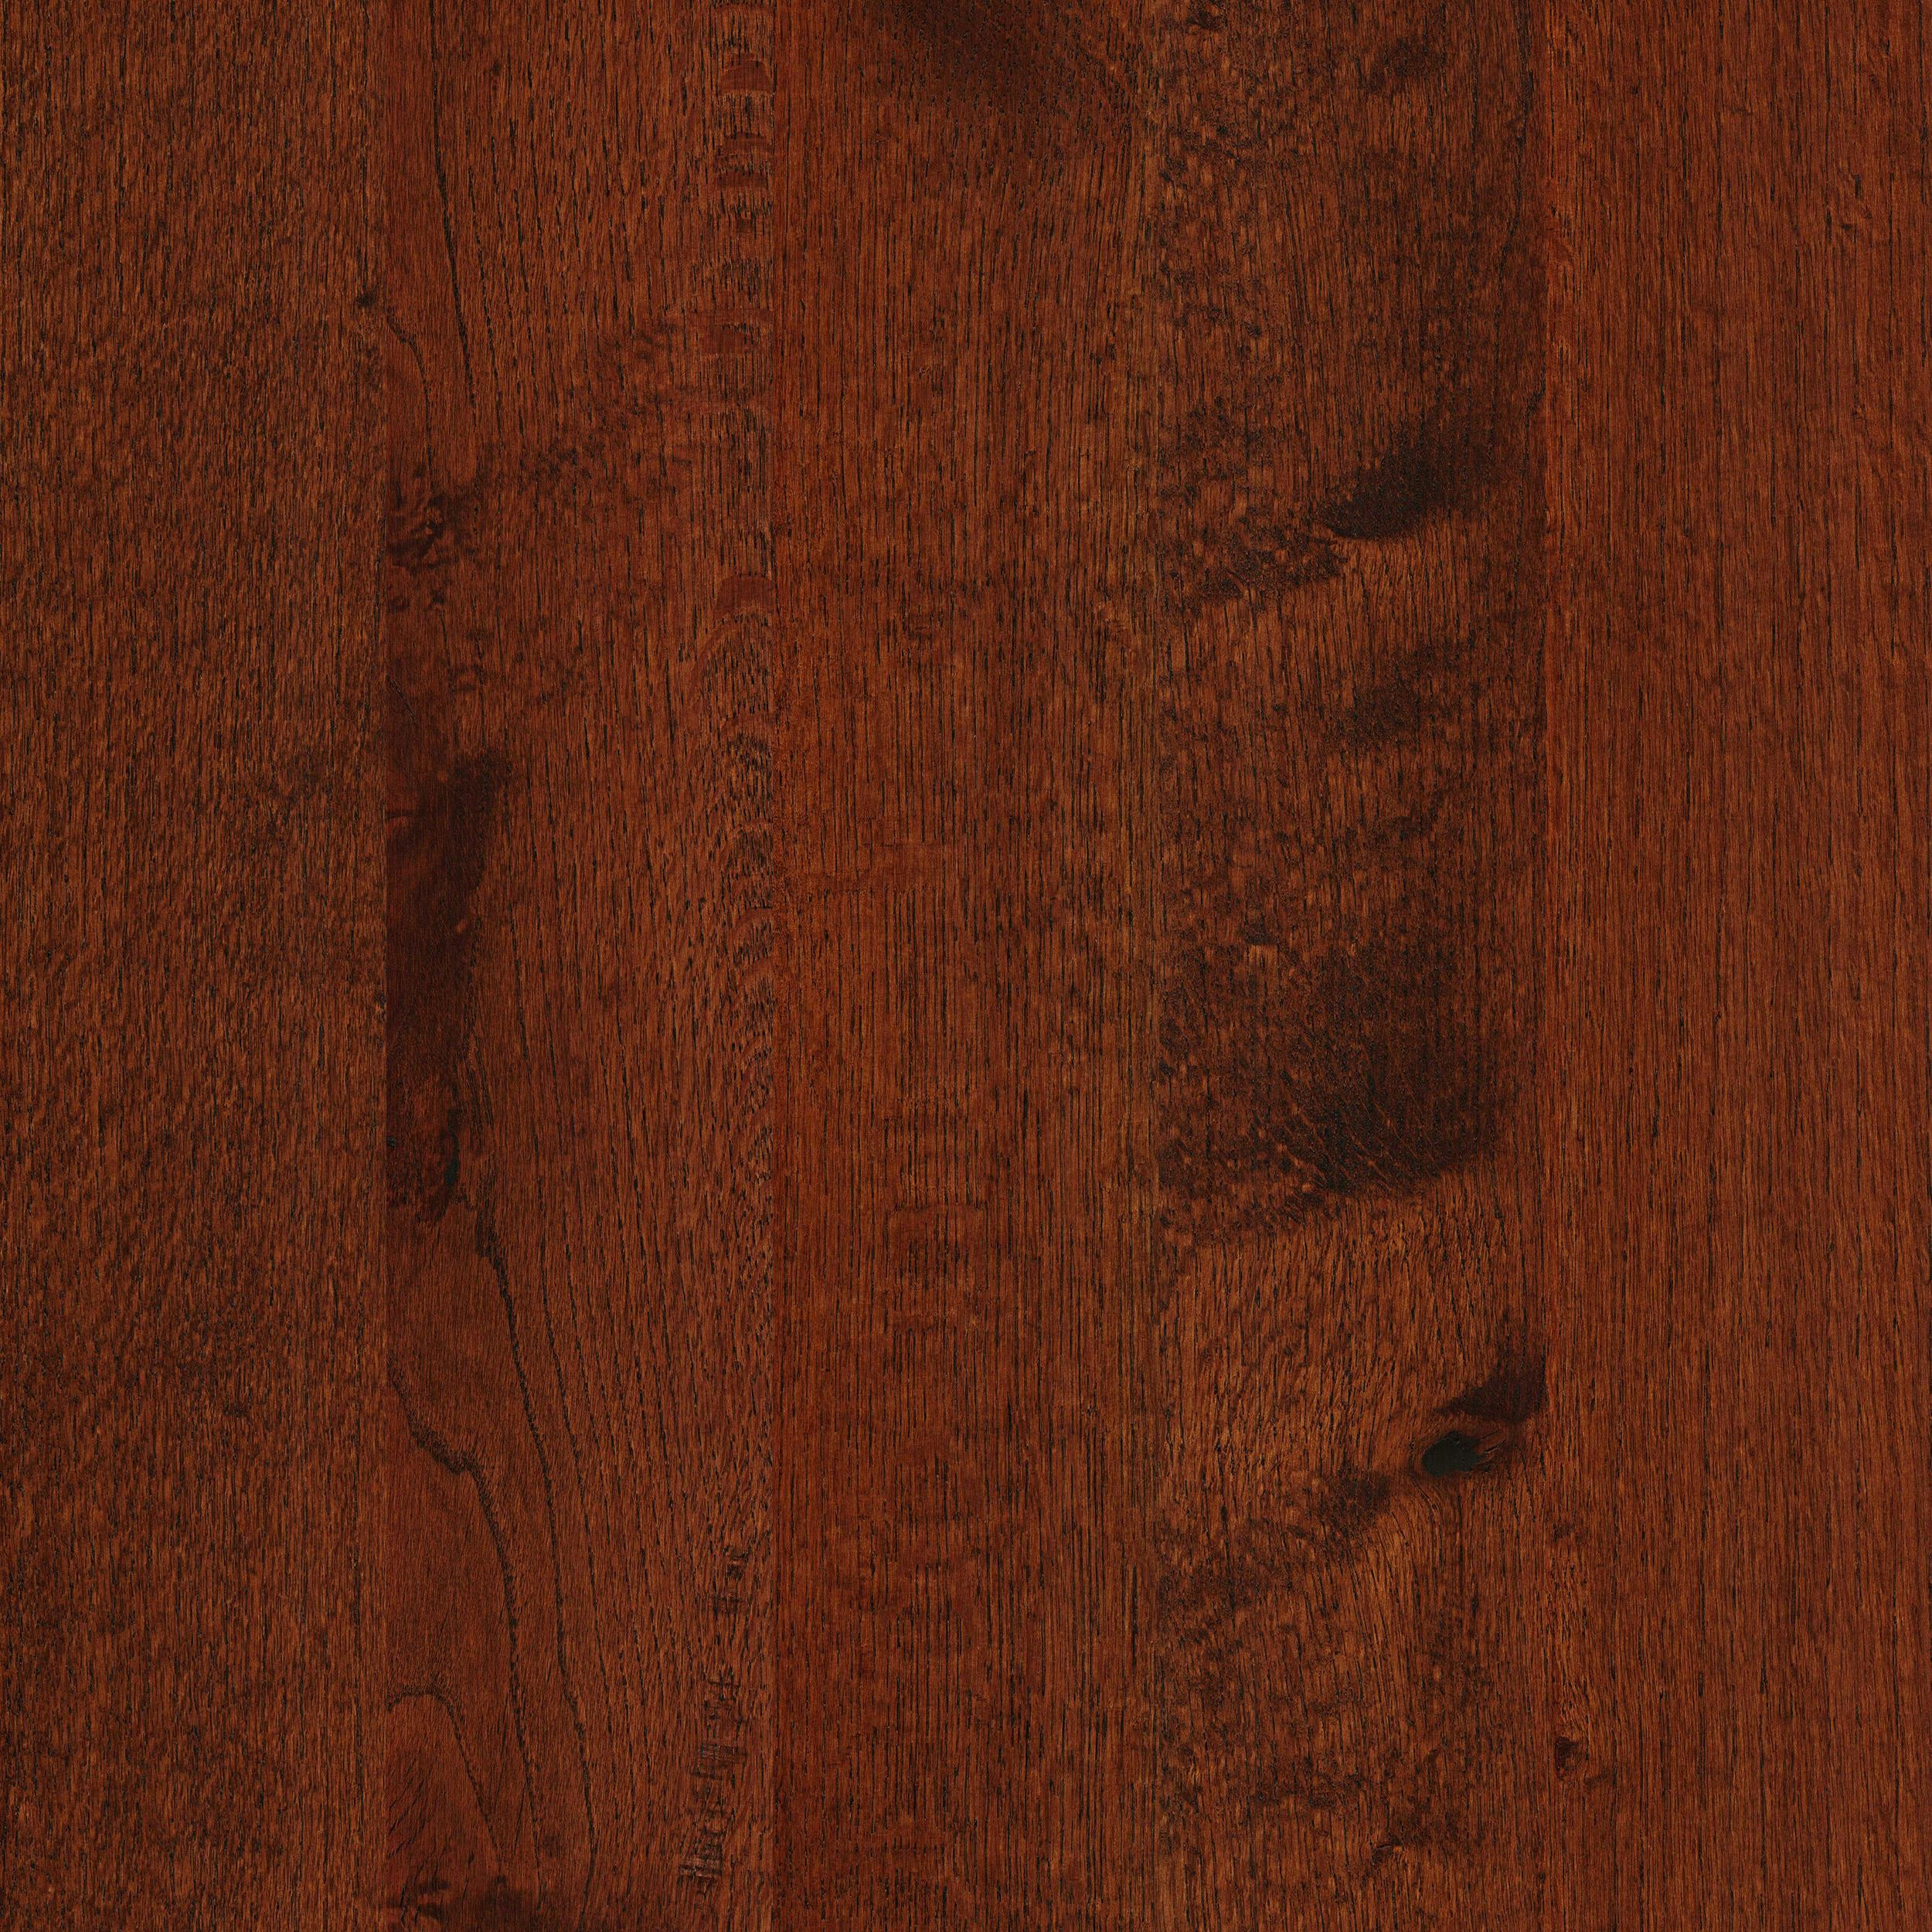 hickory vs red oak hardwood flooring of timber hardwood red oak sorrell 5 wide solid hardwood flooring with red oak sorrell timber solid approved bk